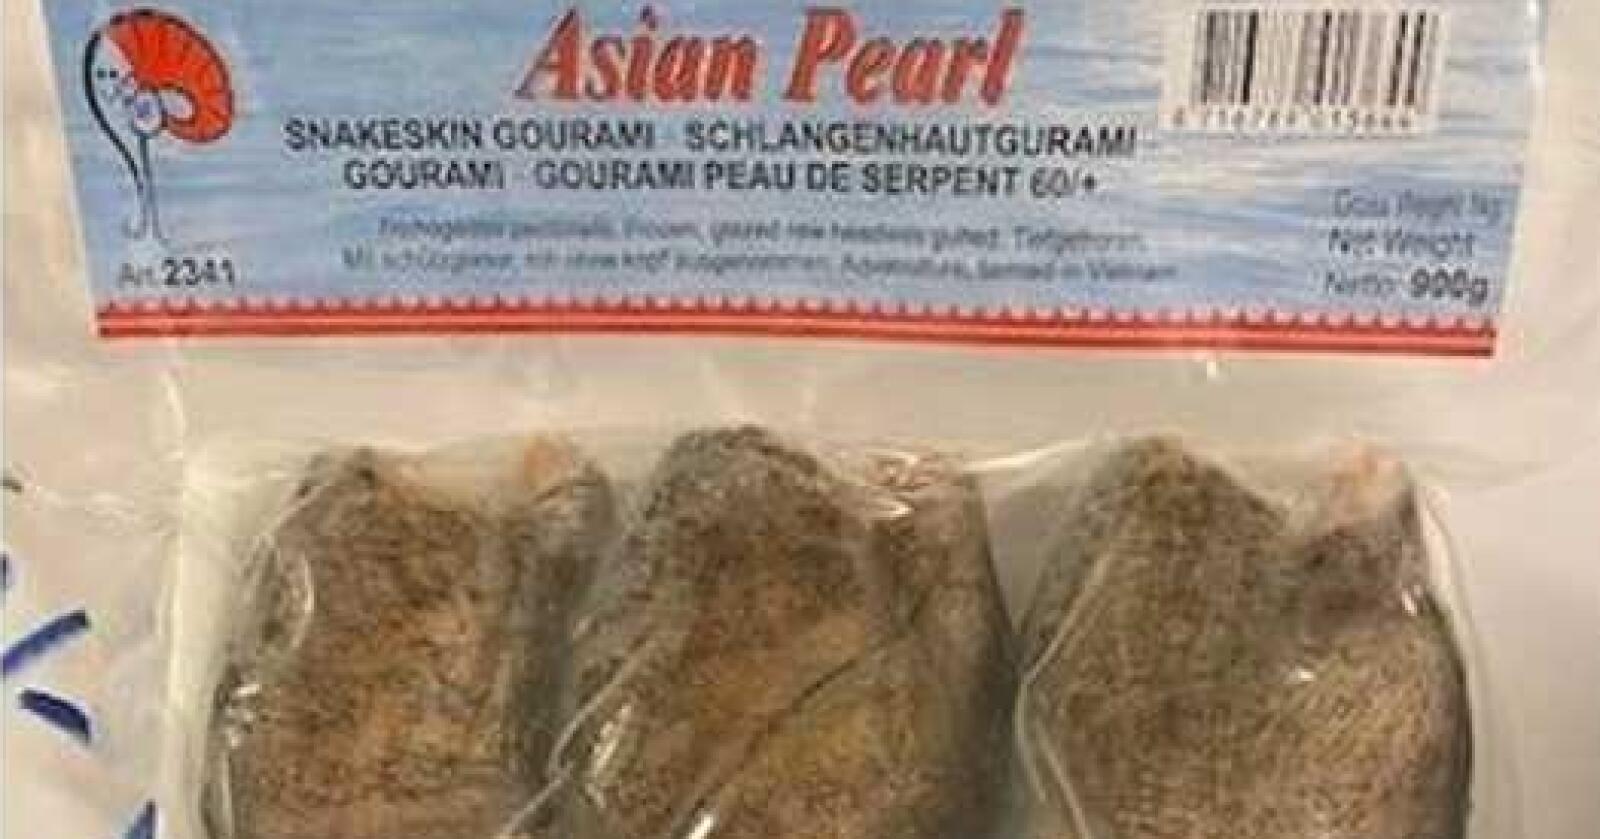 Sletten Norge AS trekker tilbake produktet «Asian Pearl, Snakeskin Gourami». Foto: Sletten Norge AS